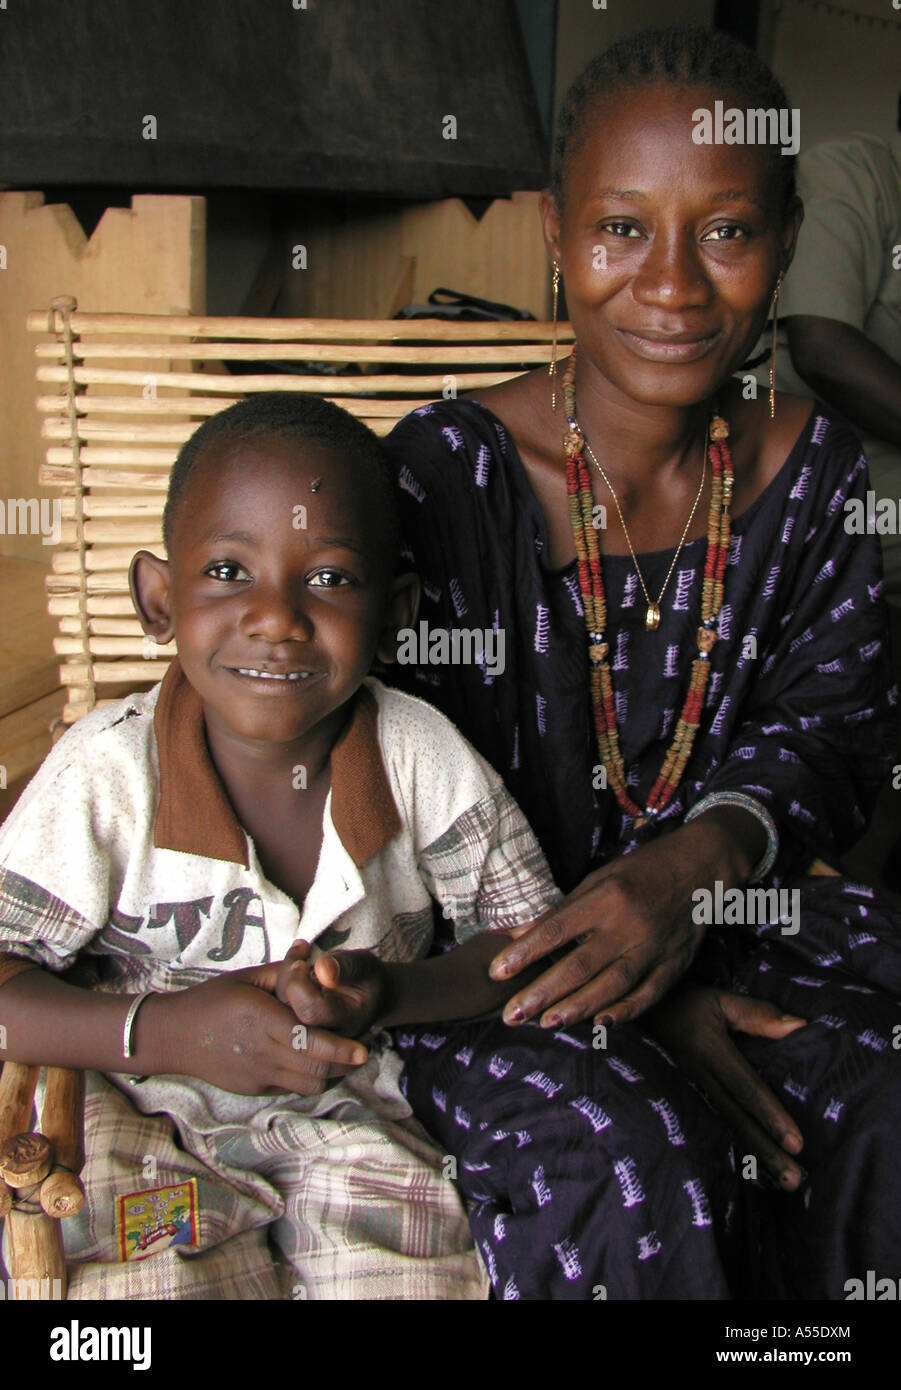 Painet ik0343 burkina faso 35oldold fatahou vih pauline fils vie positif aids support group ouagadougou pays développe Banque D'Images